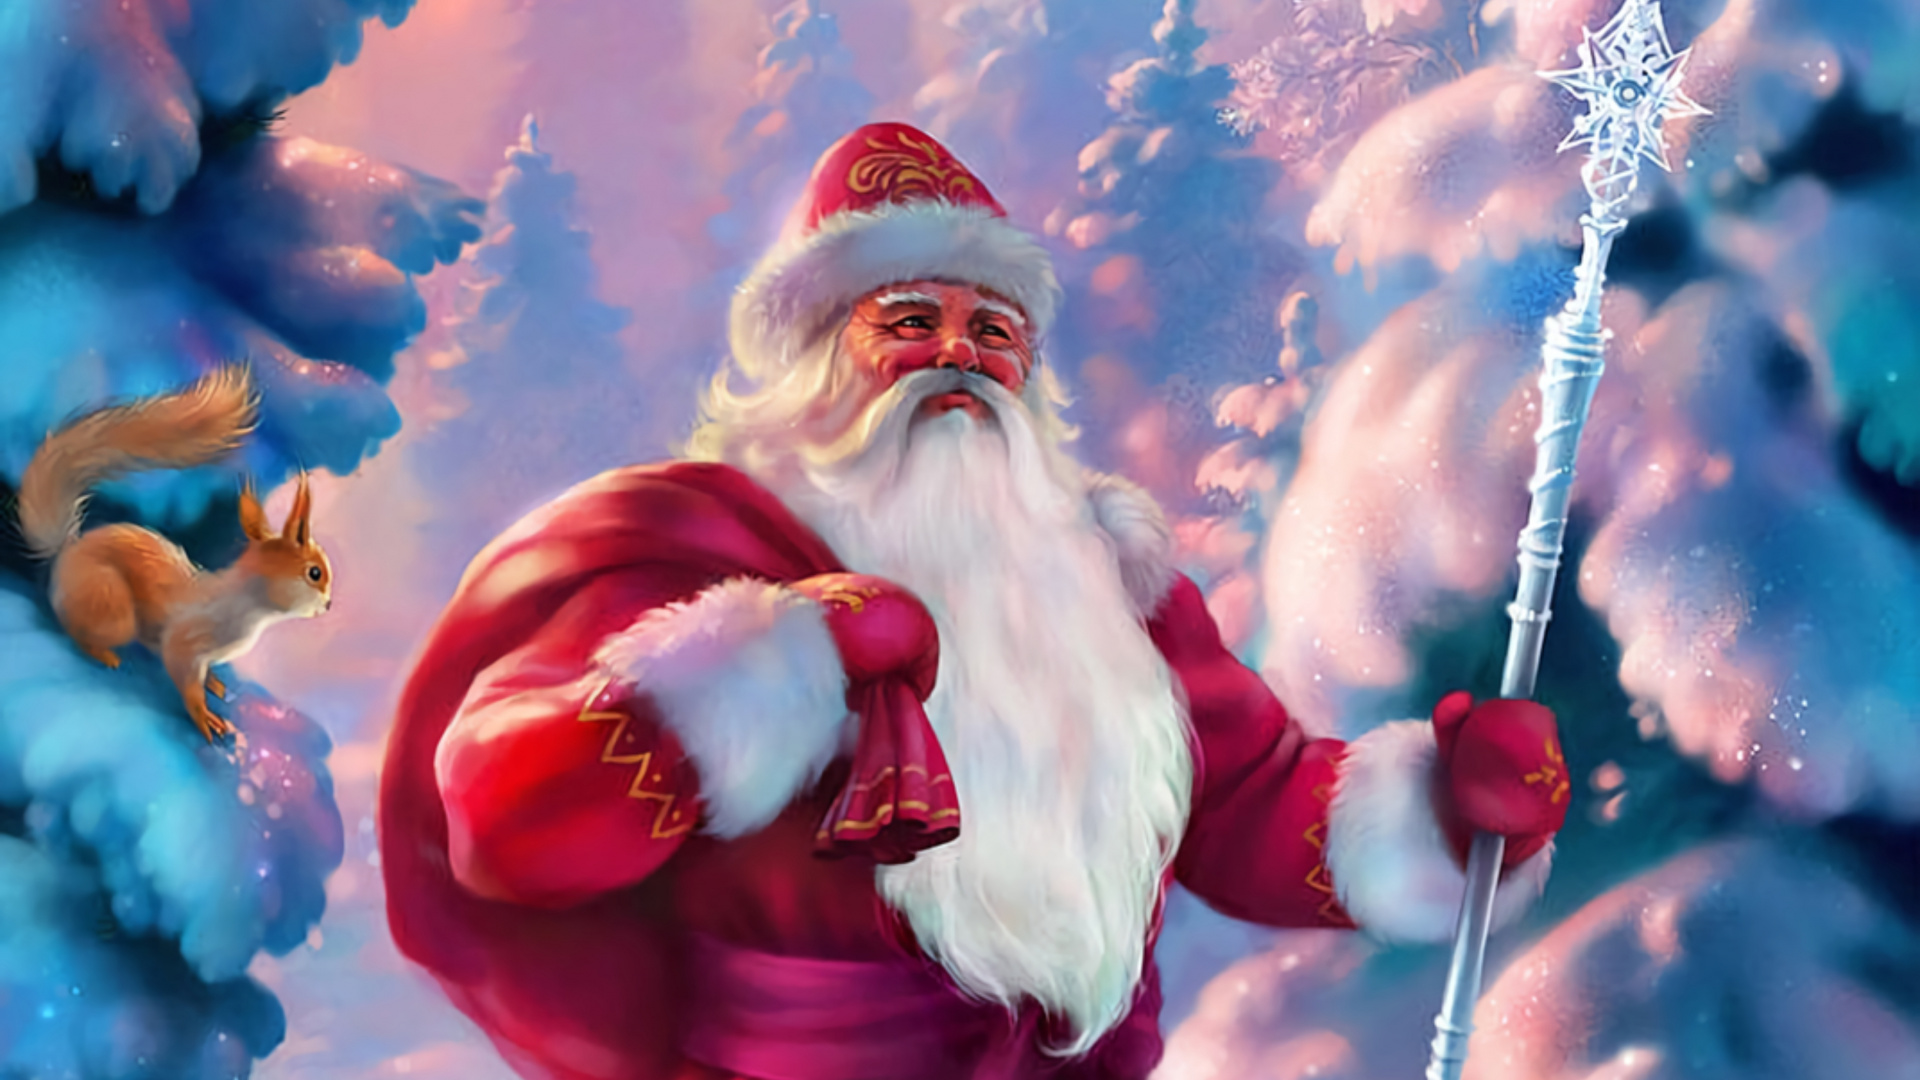 Santa Claus, Ded Moroz, El Día De Navidad, Navidad, Animación. Wallpaper in 1920x1080 Resolution